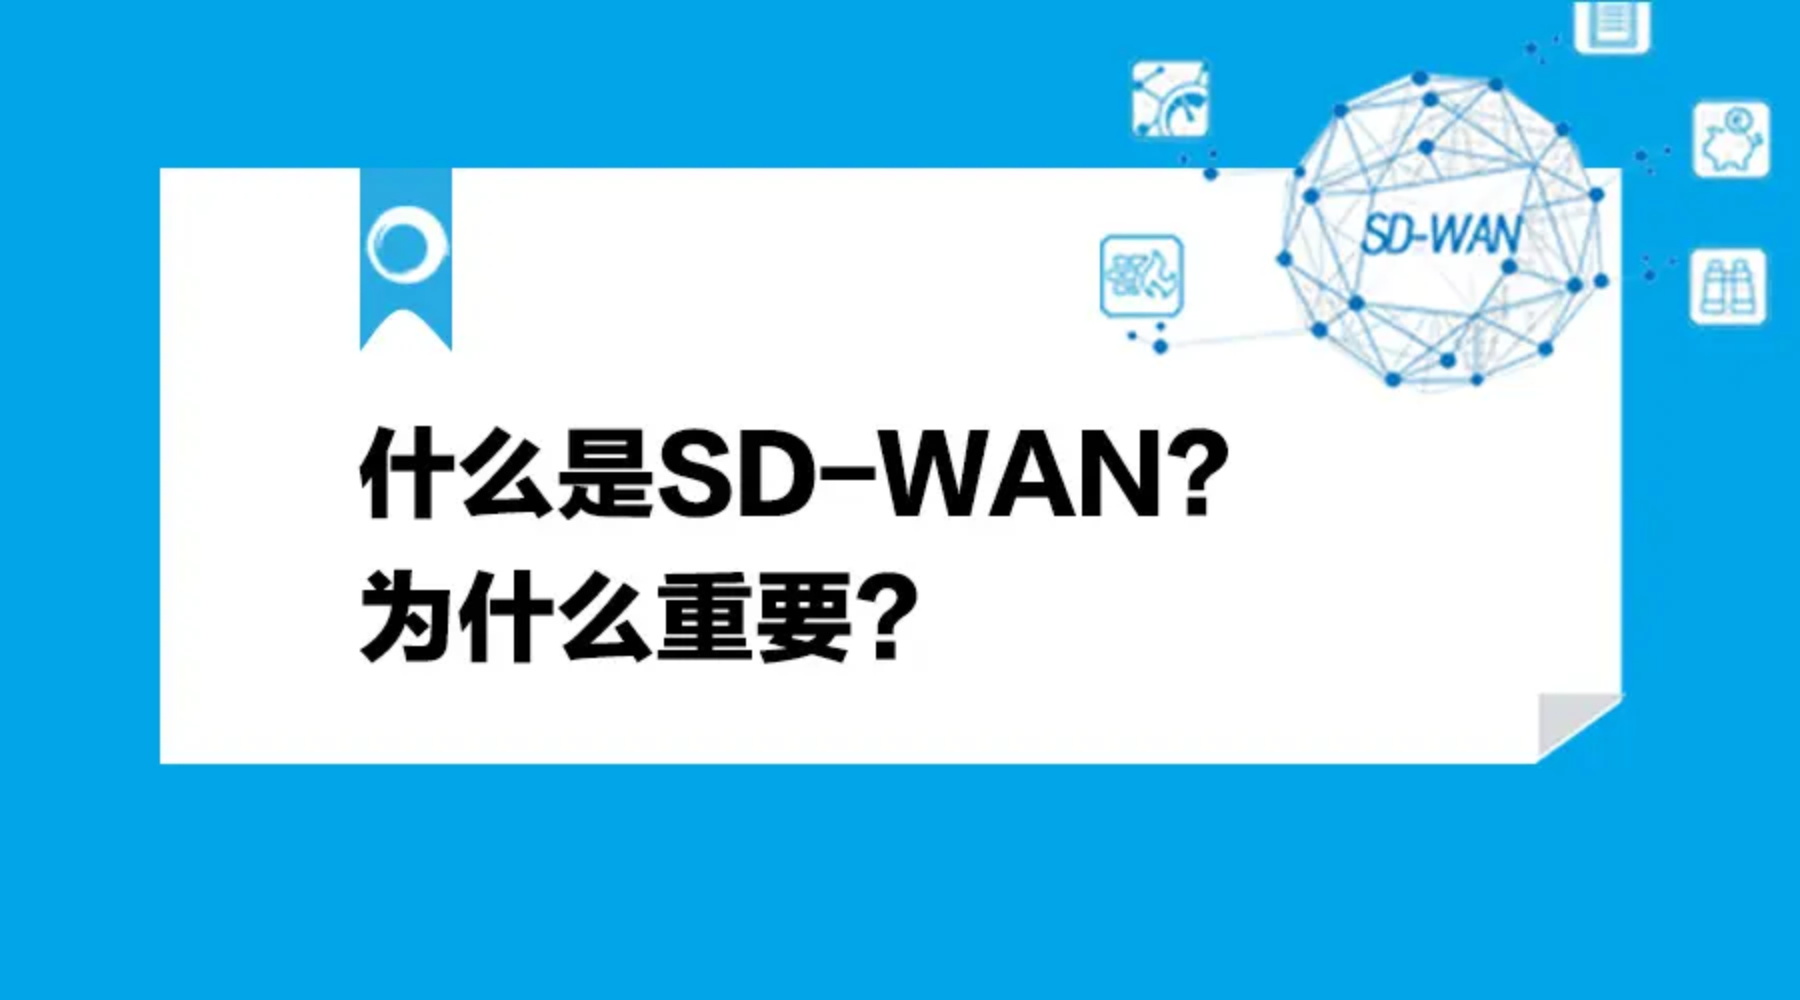 是否采用SD-WAN？你需要先考虑以下问题!